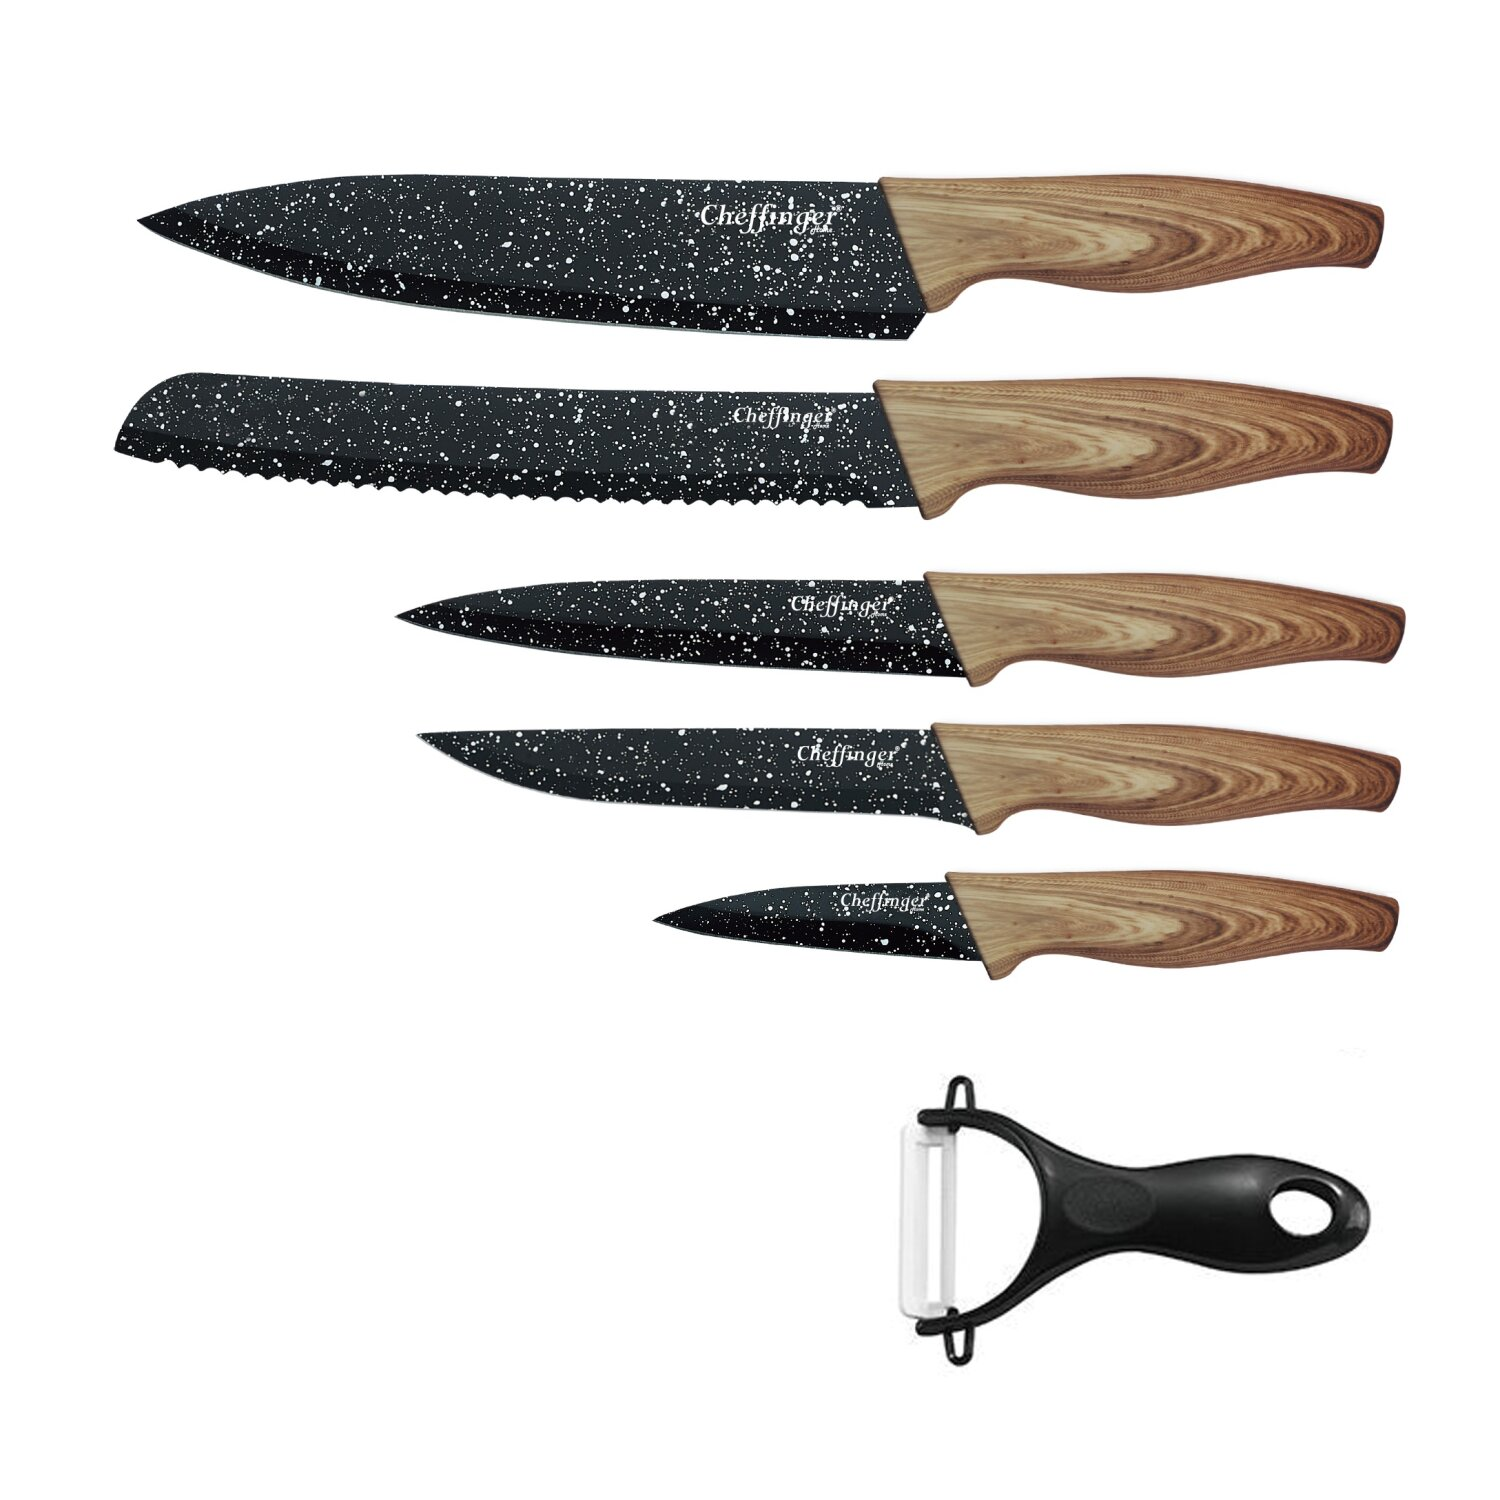 6 Messerset teiliges Messerset CHEFFINGER